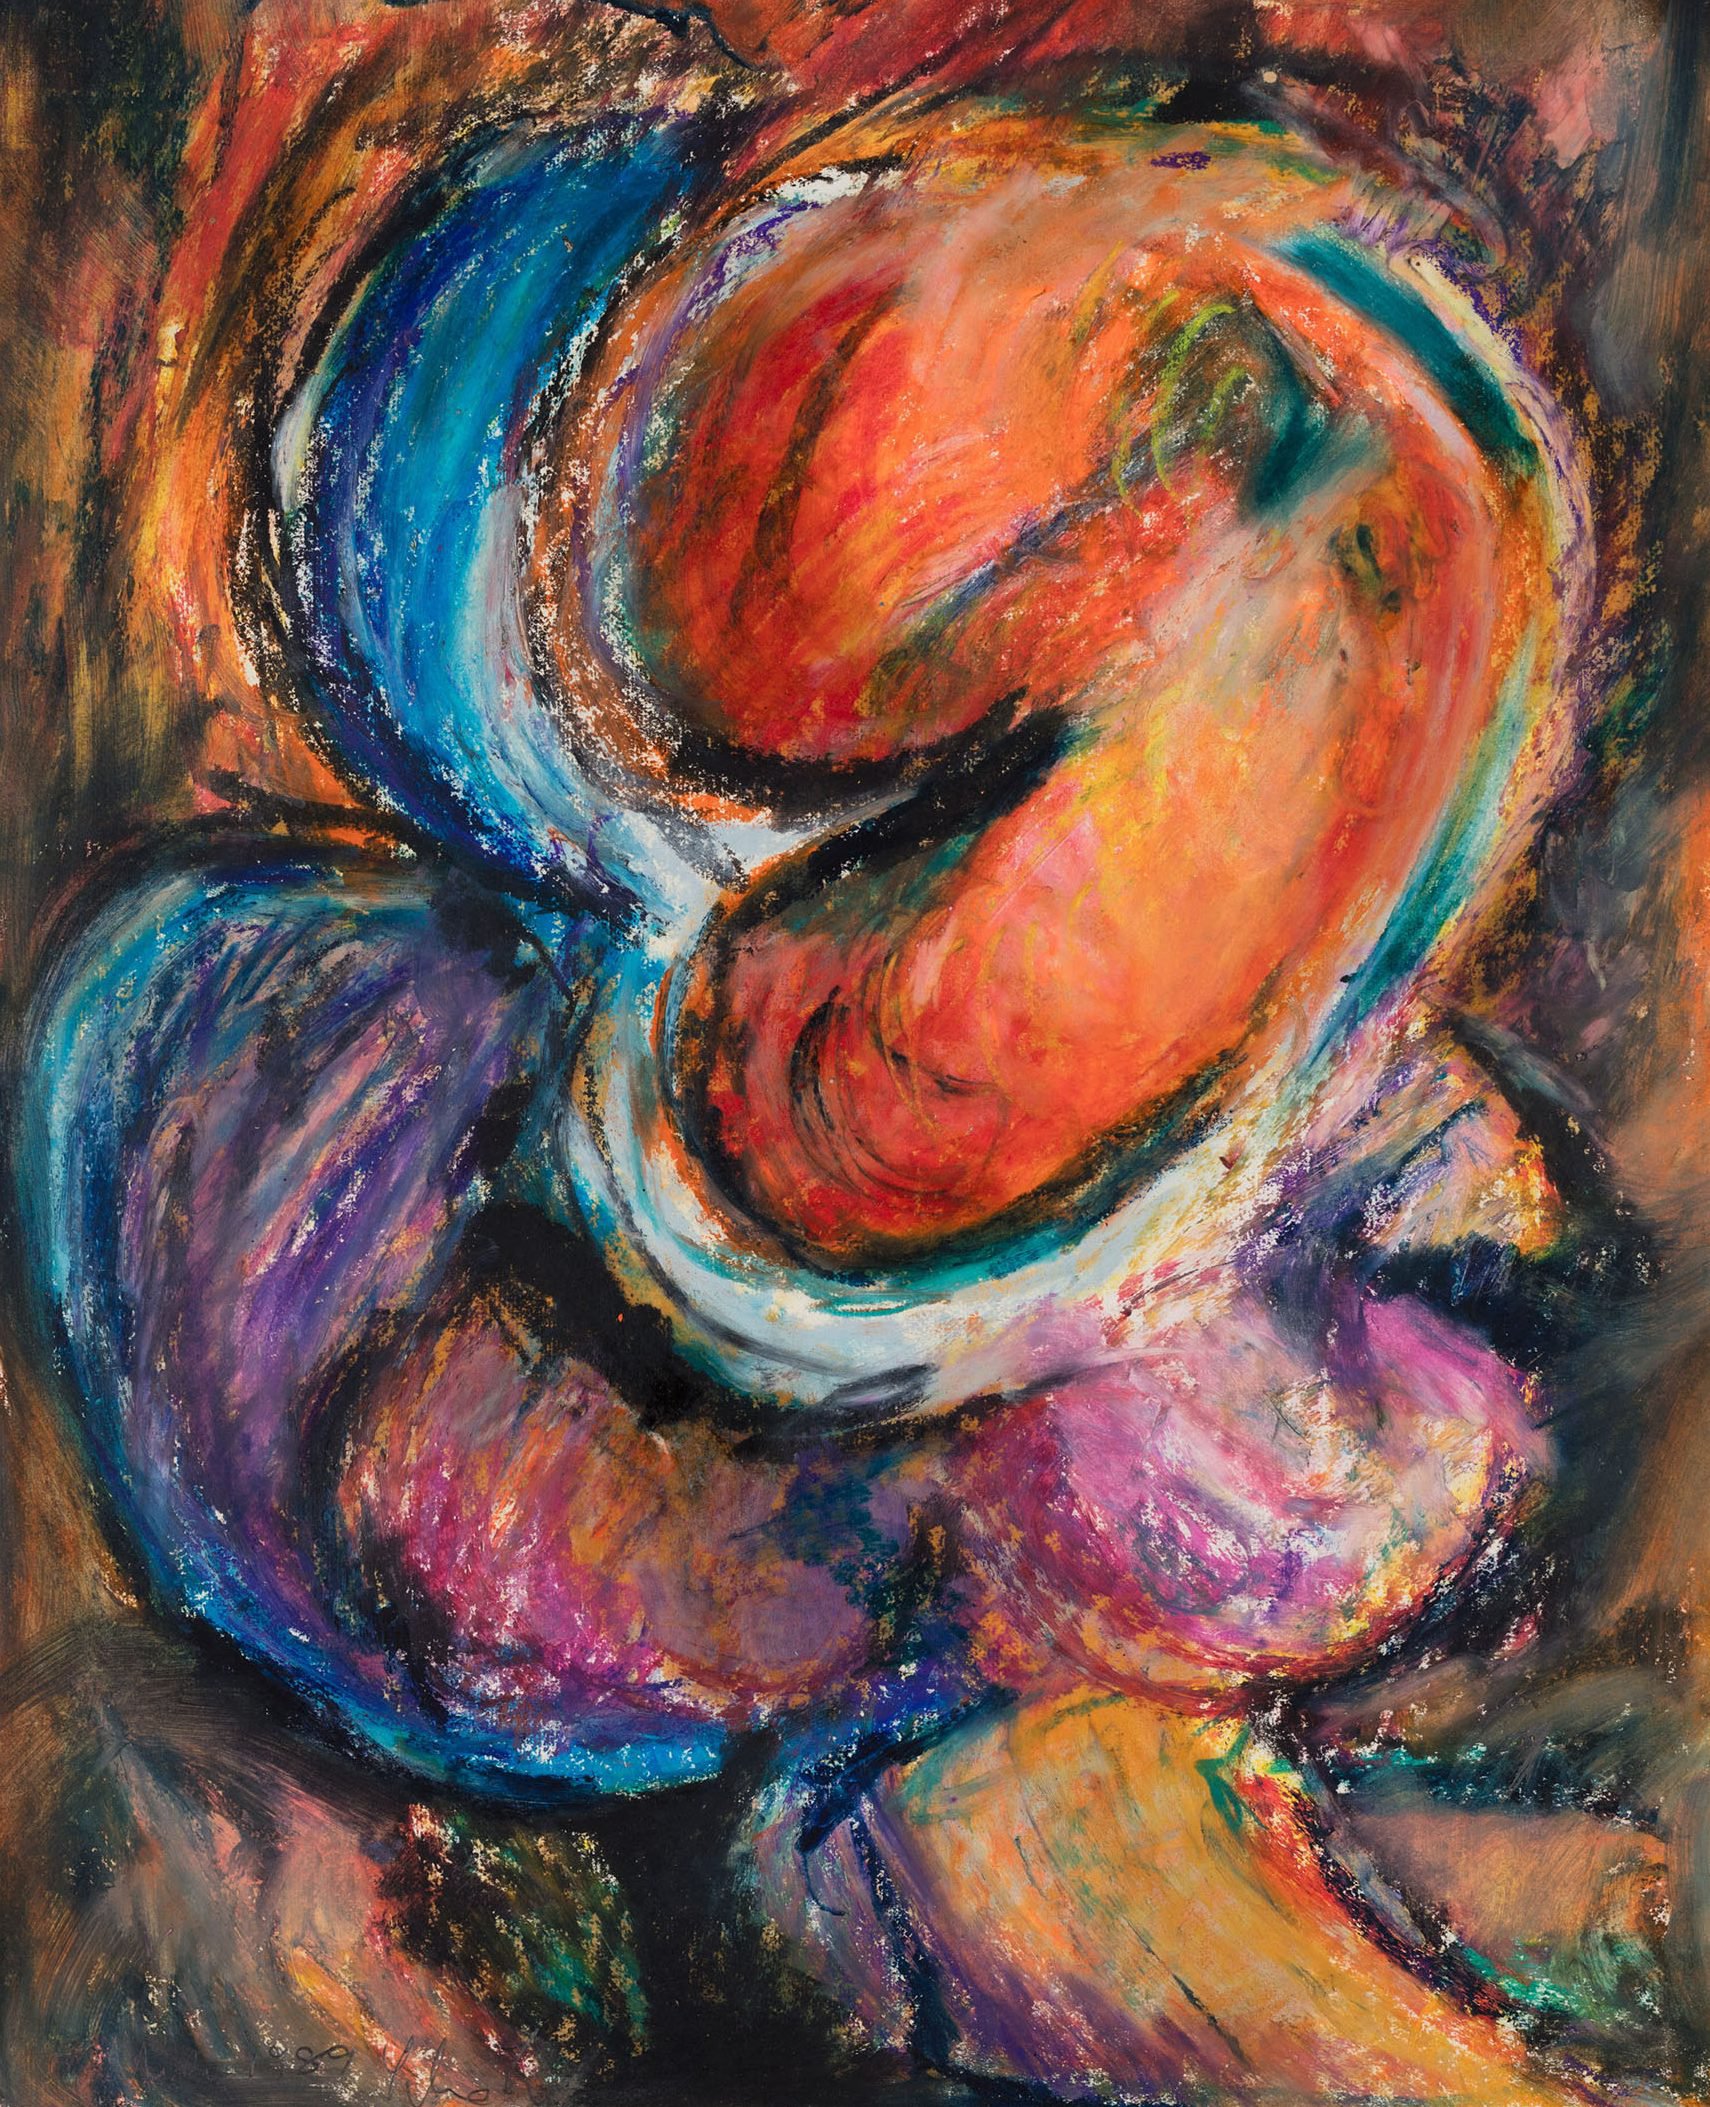 Liliane Lijn, Bottoms Up, detail, oil pastel on paper, 48.5 x 39 cm unframed (19 1/8 x 15 3/8 in unframed), 1991